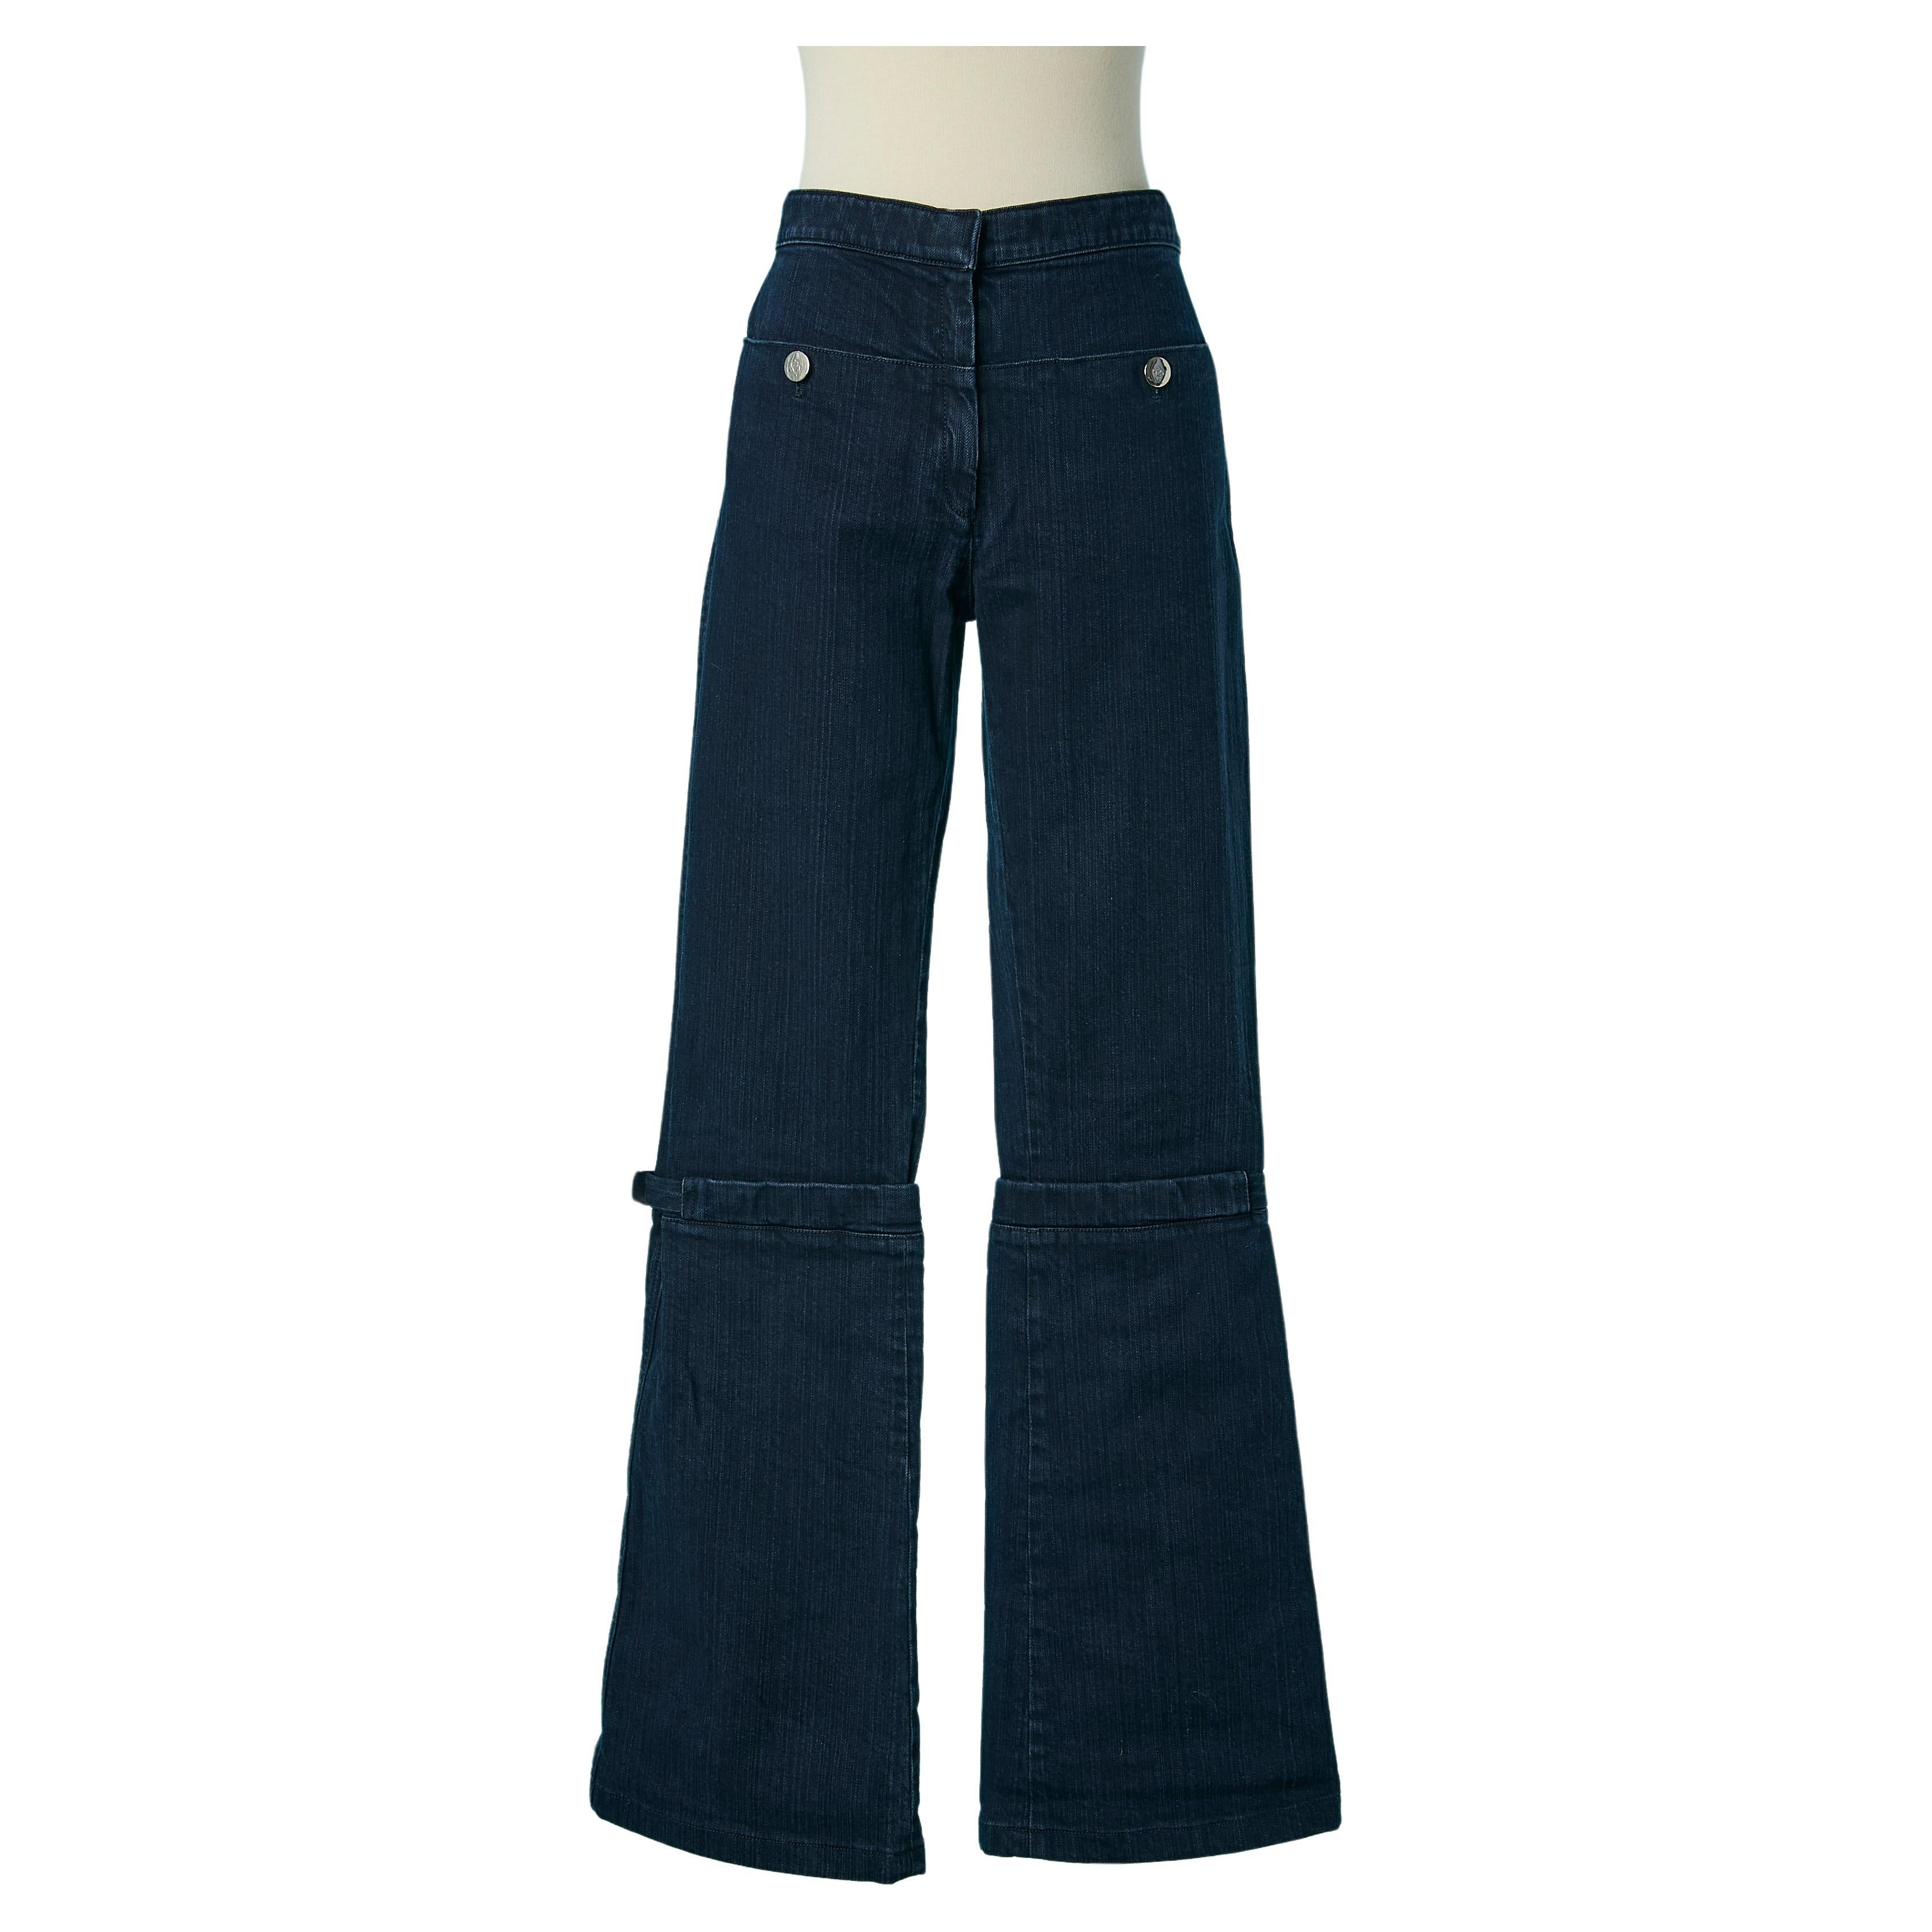 The Jean mit Marken-Druckknöpfen und silberner Metallschnalle an den Knien Chanel  im Angebot